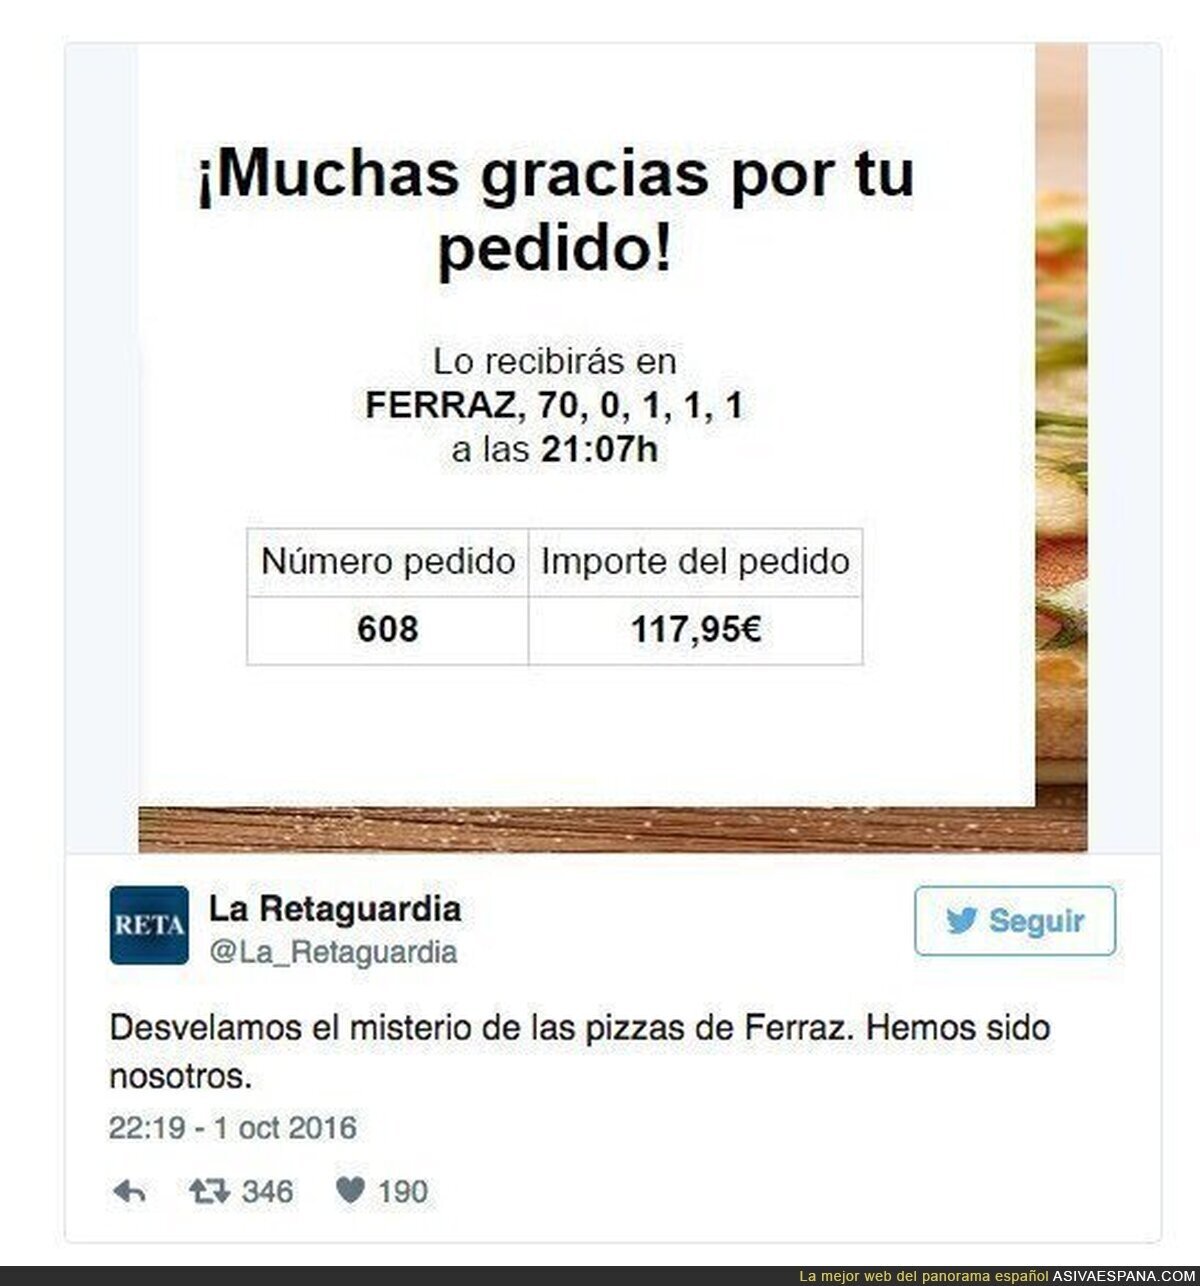 Envío masivo de pizzas a Ferraz, 'troleo' a Pedro Sánchez tras su dimisión